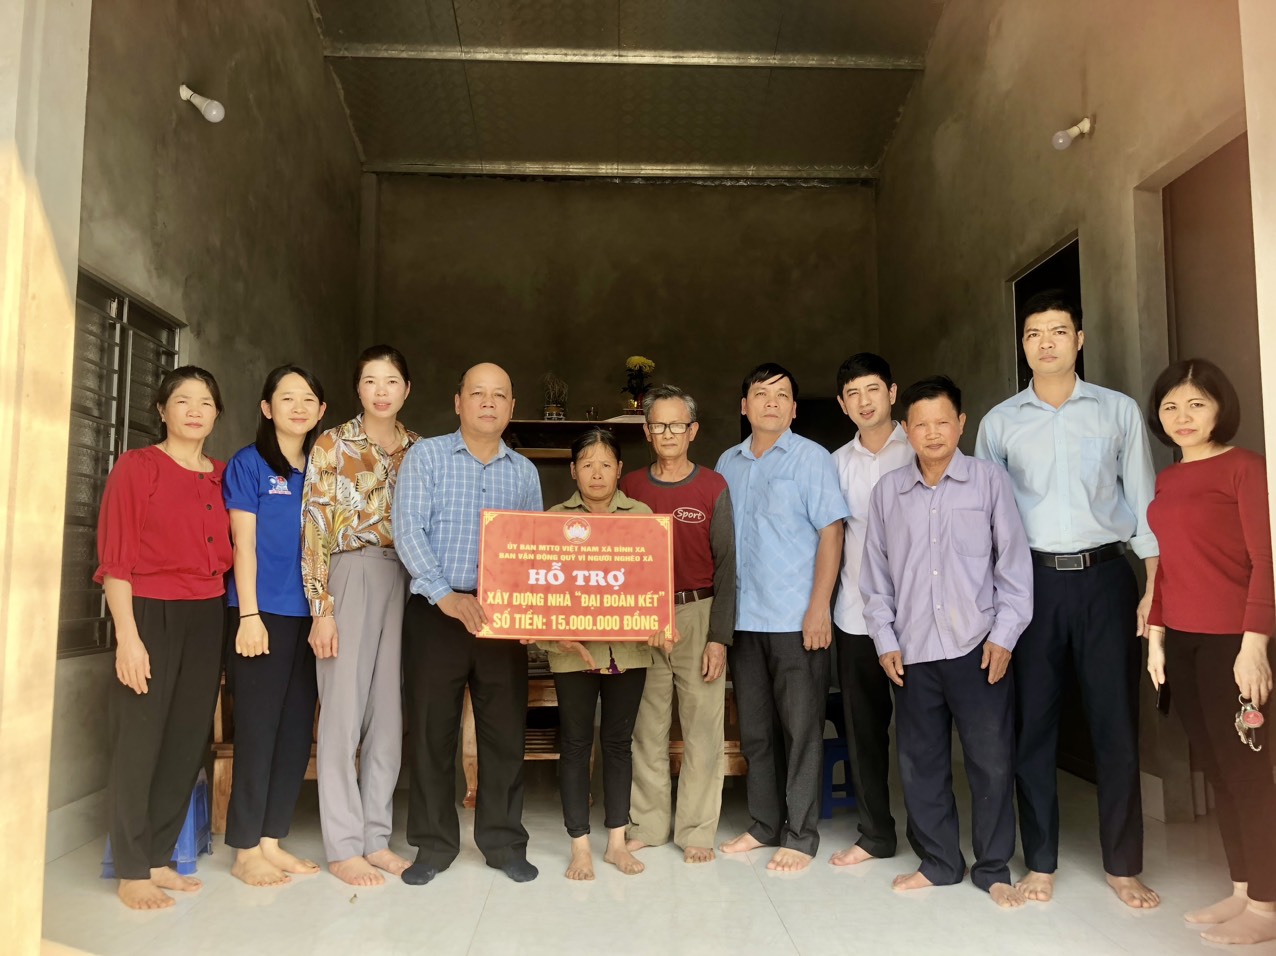 Hàm Yên: MTTQ  xã Bình Xa trao tiền hỗ trợ làm nhà Đại đoàn kết cho hộ nghèo tại thôn Yên Bình